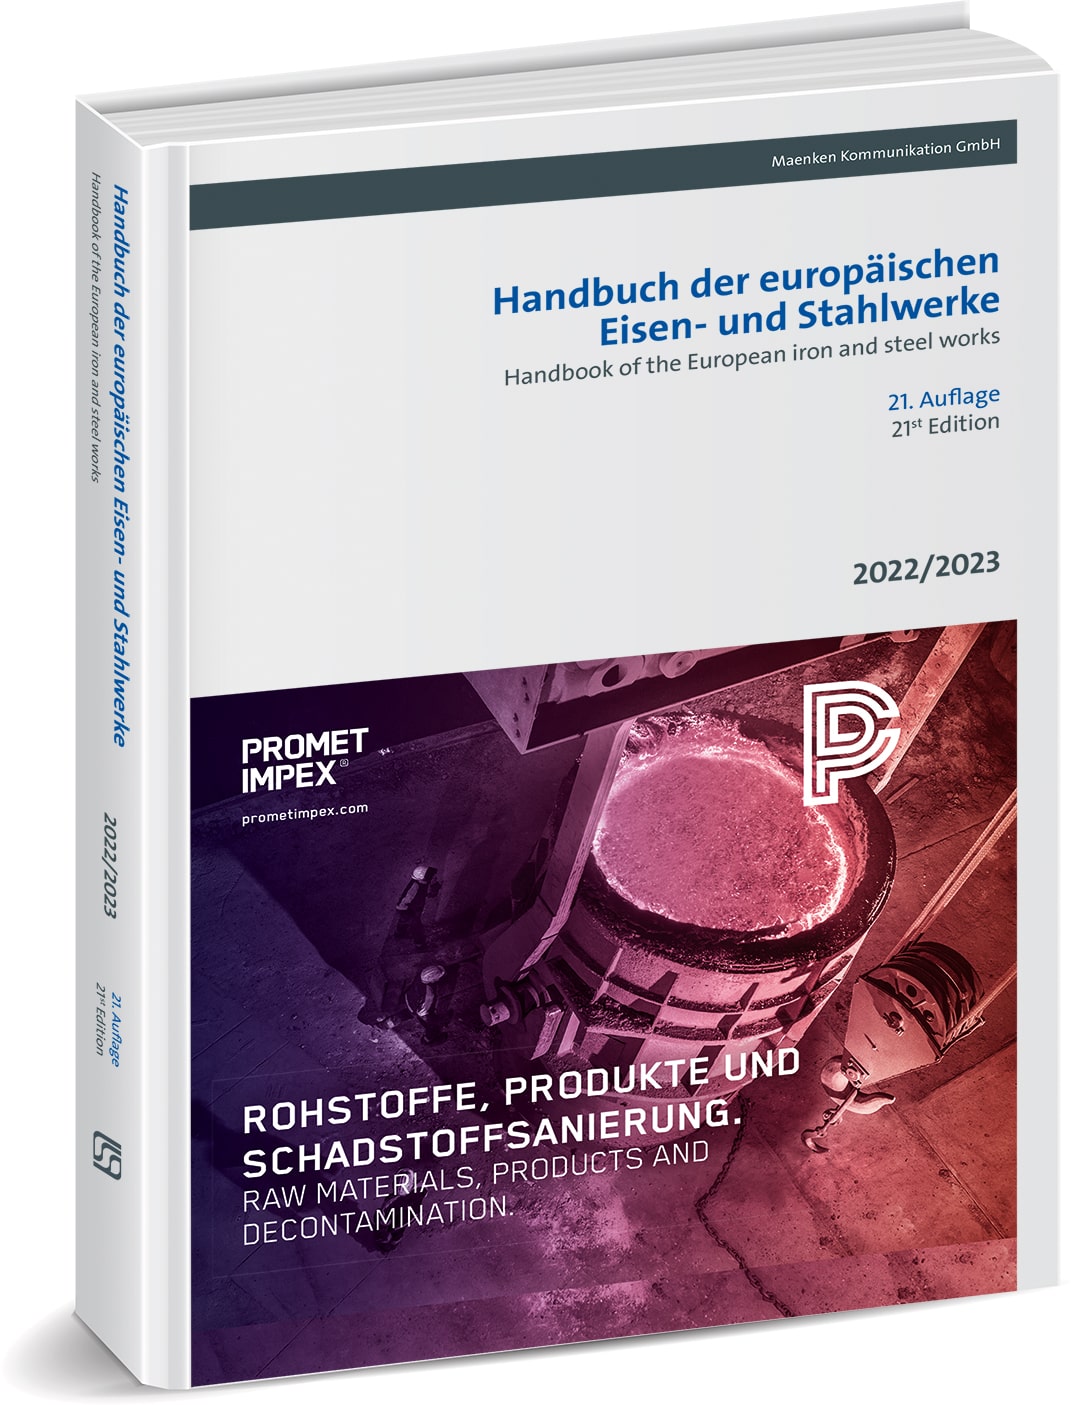 Handbuch der europäischen Eisen- und Stahlwerke